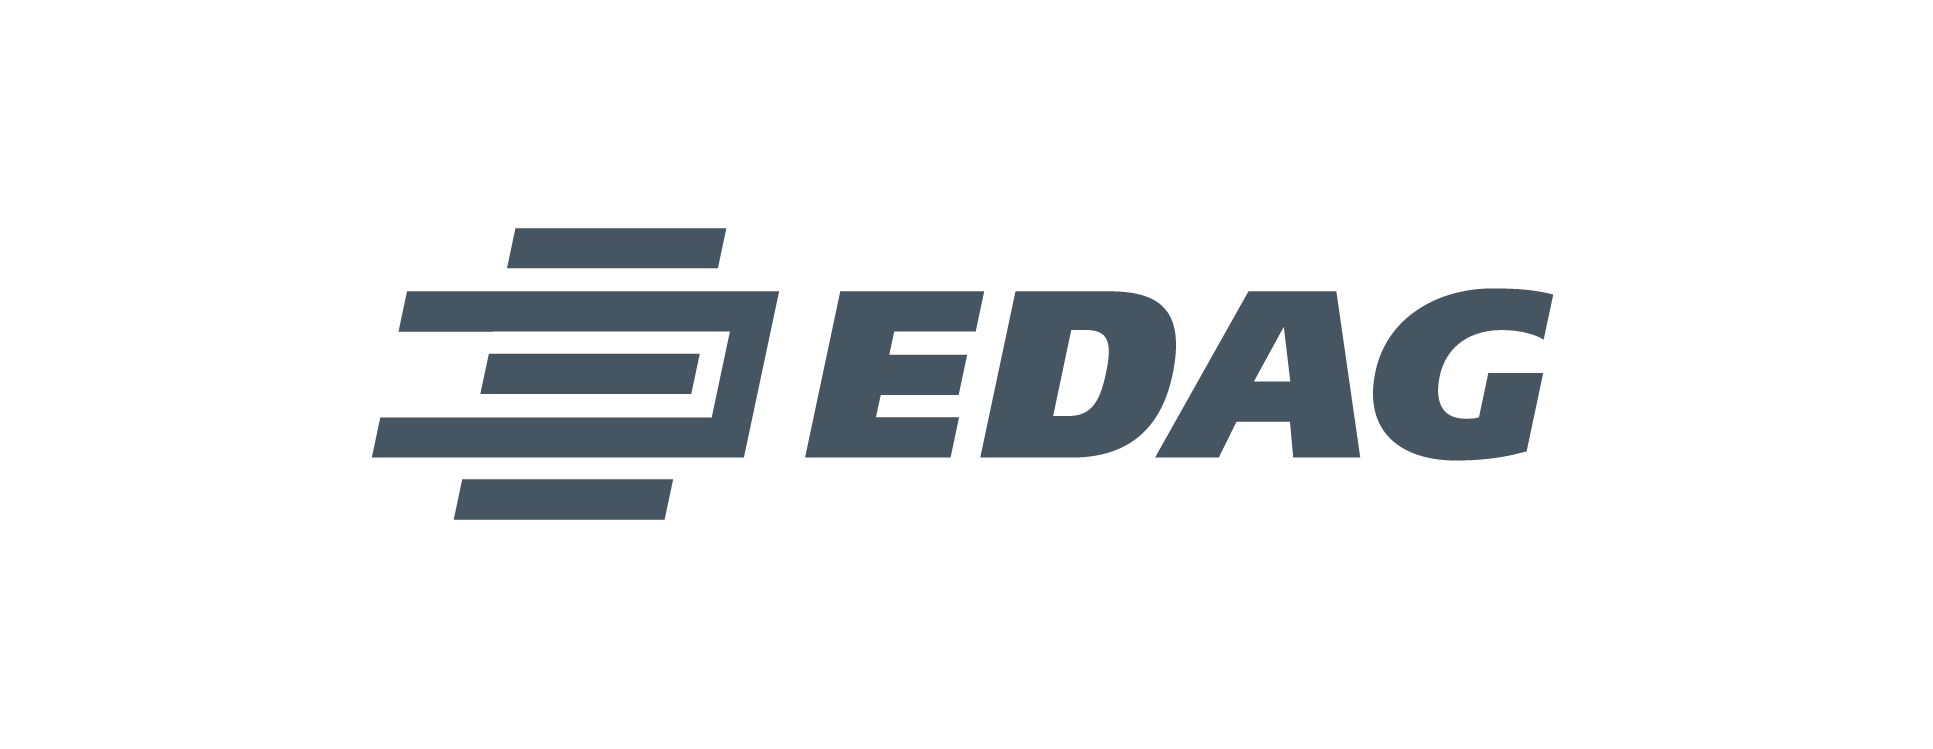 EDAG Engineering Group